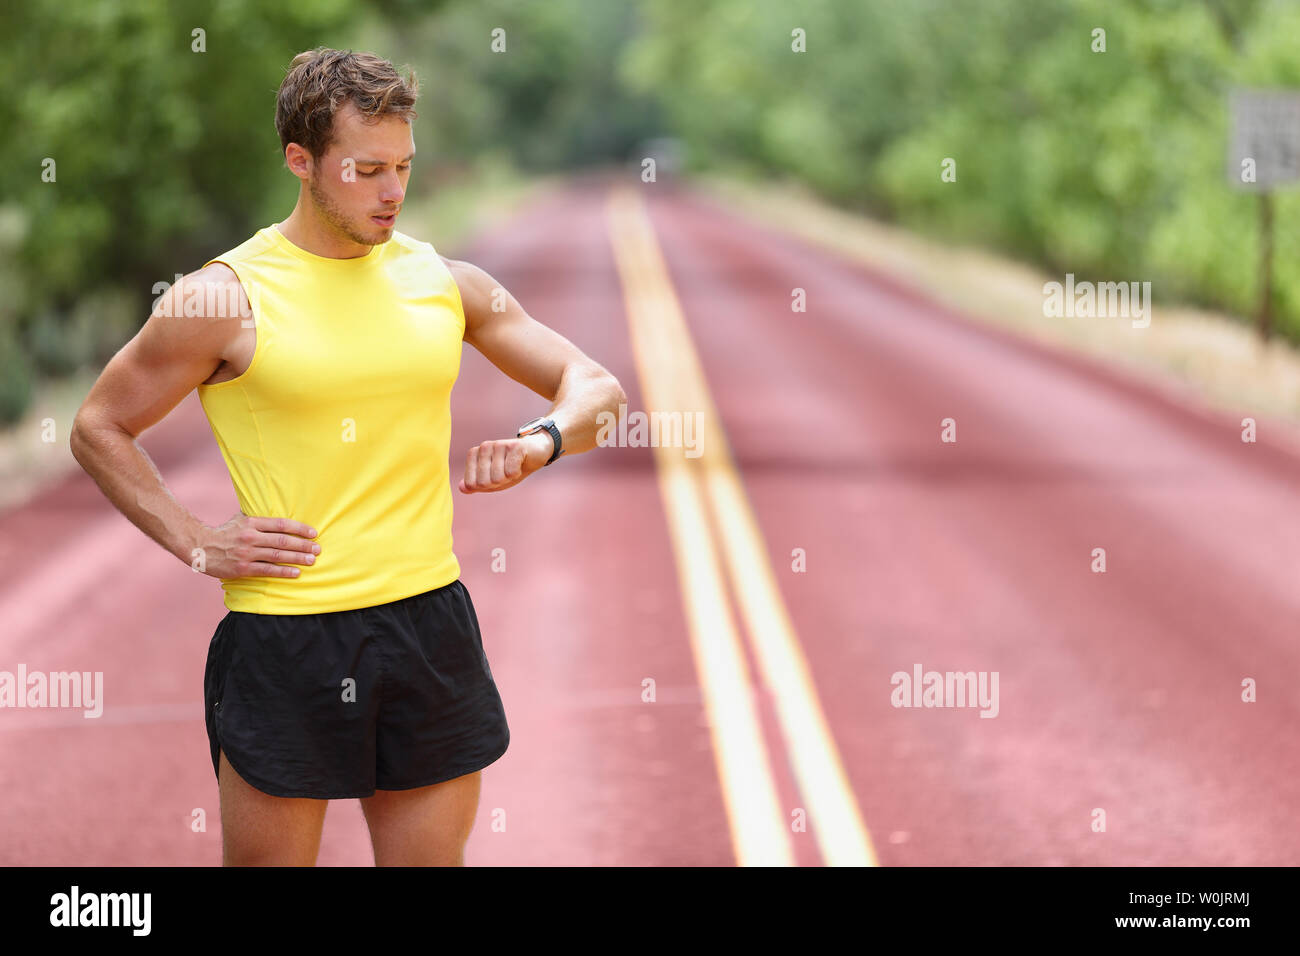 Runner suchen bei smartwatch Pulsmesser in Pause während der Ausführung.  Man joggen außerhalb Suchen bei Sport smart Watch während des Trainings  Training für Marathon. Passen männlich fitness Modell in seiner 20  Stockfotografie -